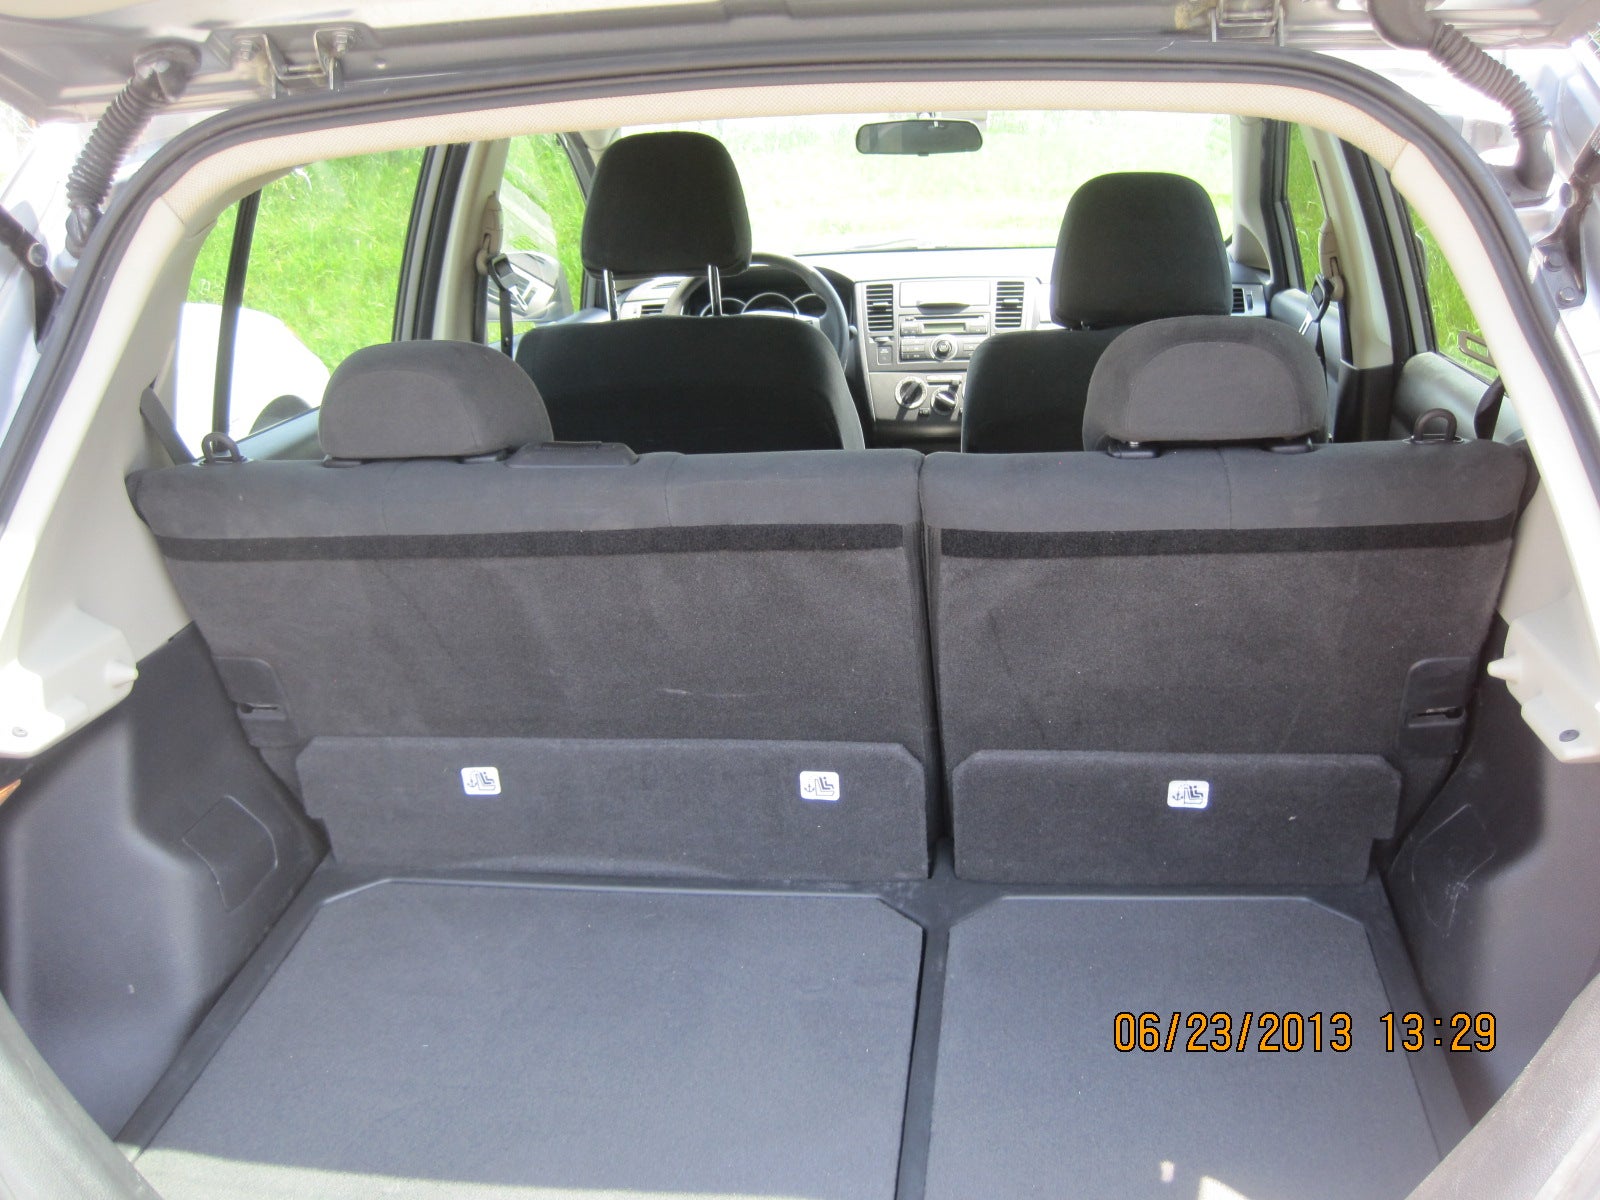 Nissan versa hatchback interior pictures #1